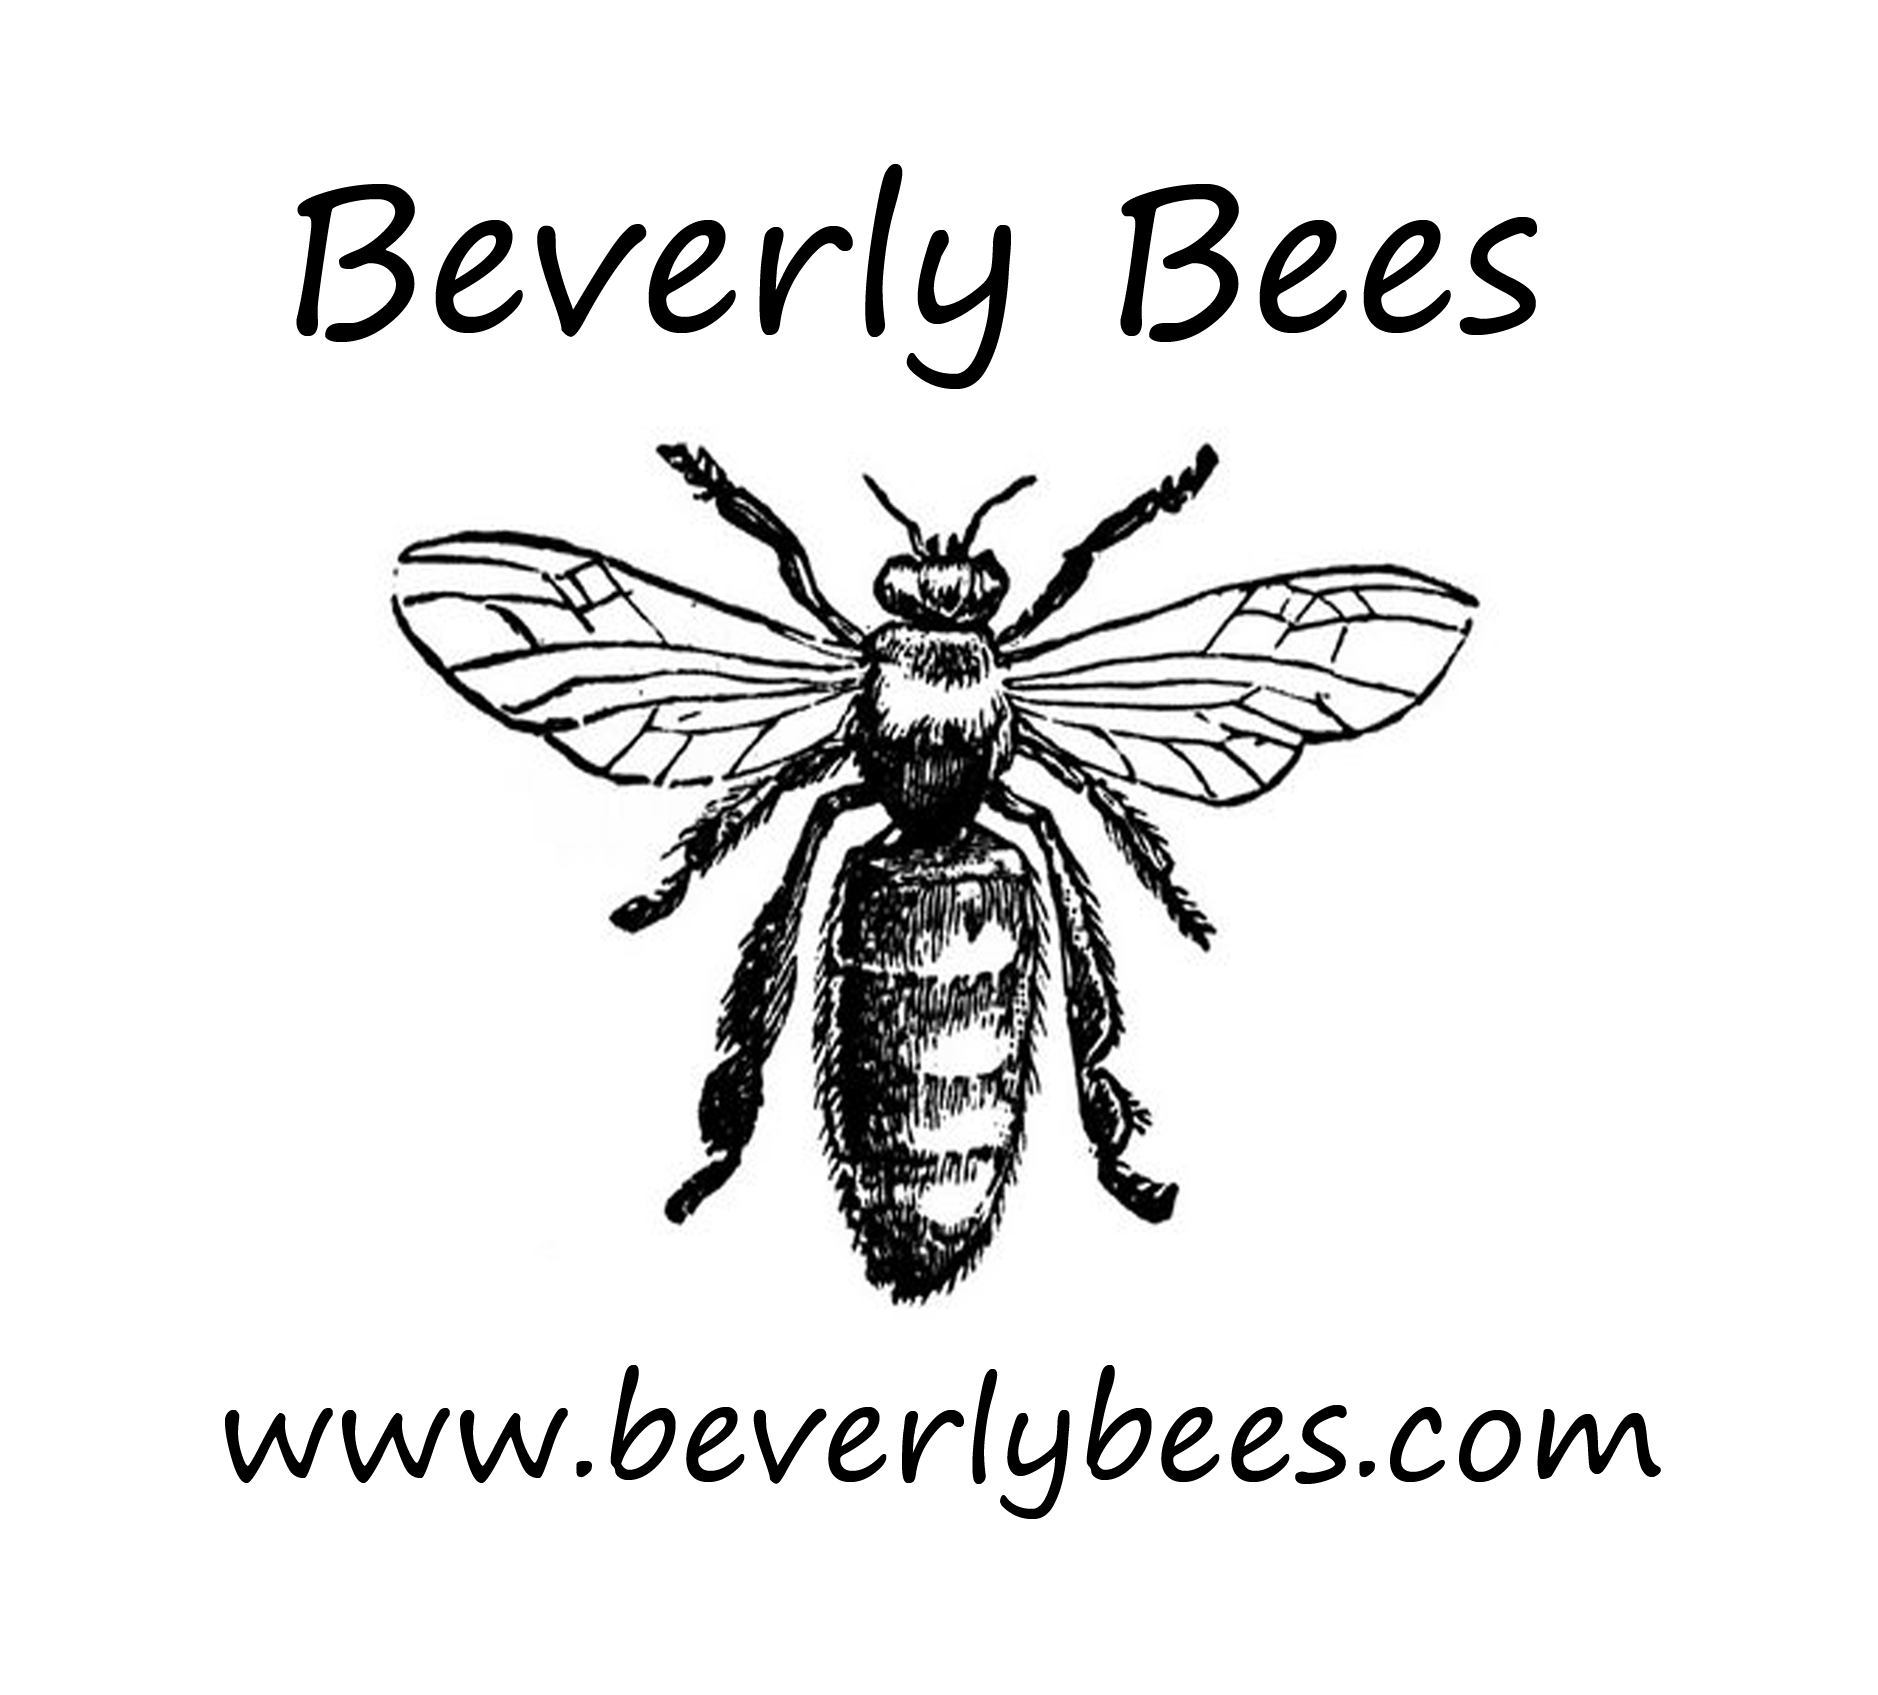 Queenless Bee Swarm Left Behind Beverly Bees